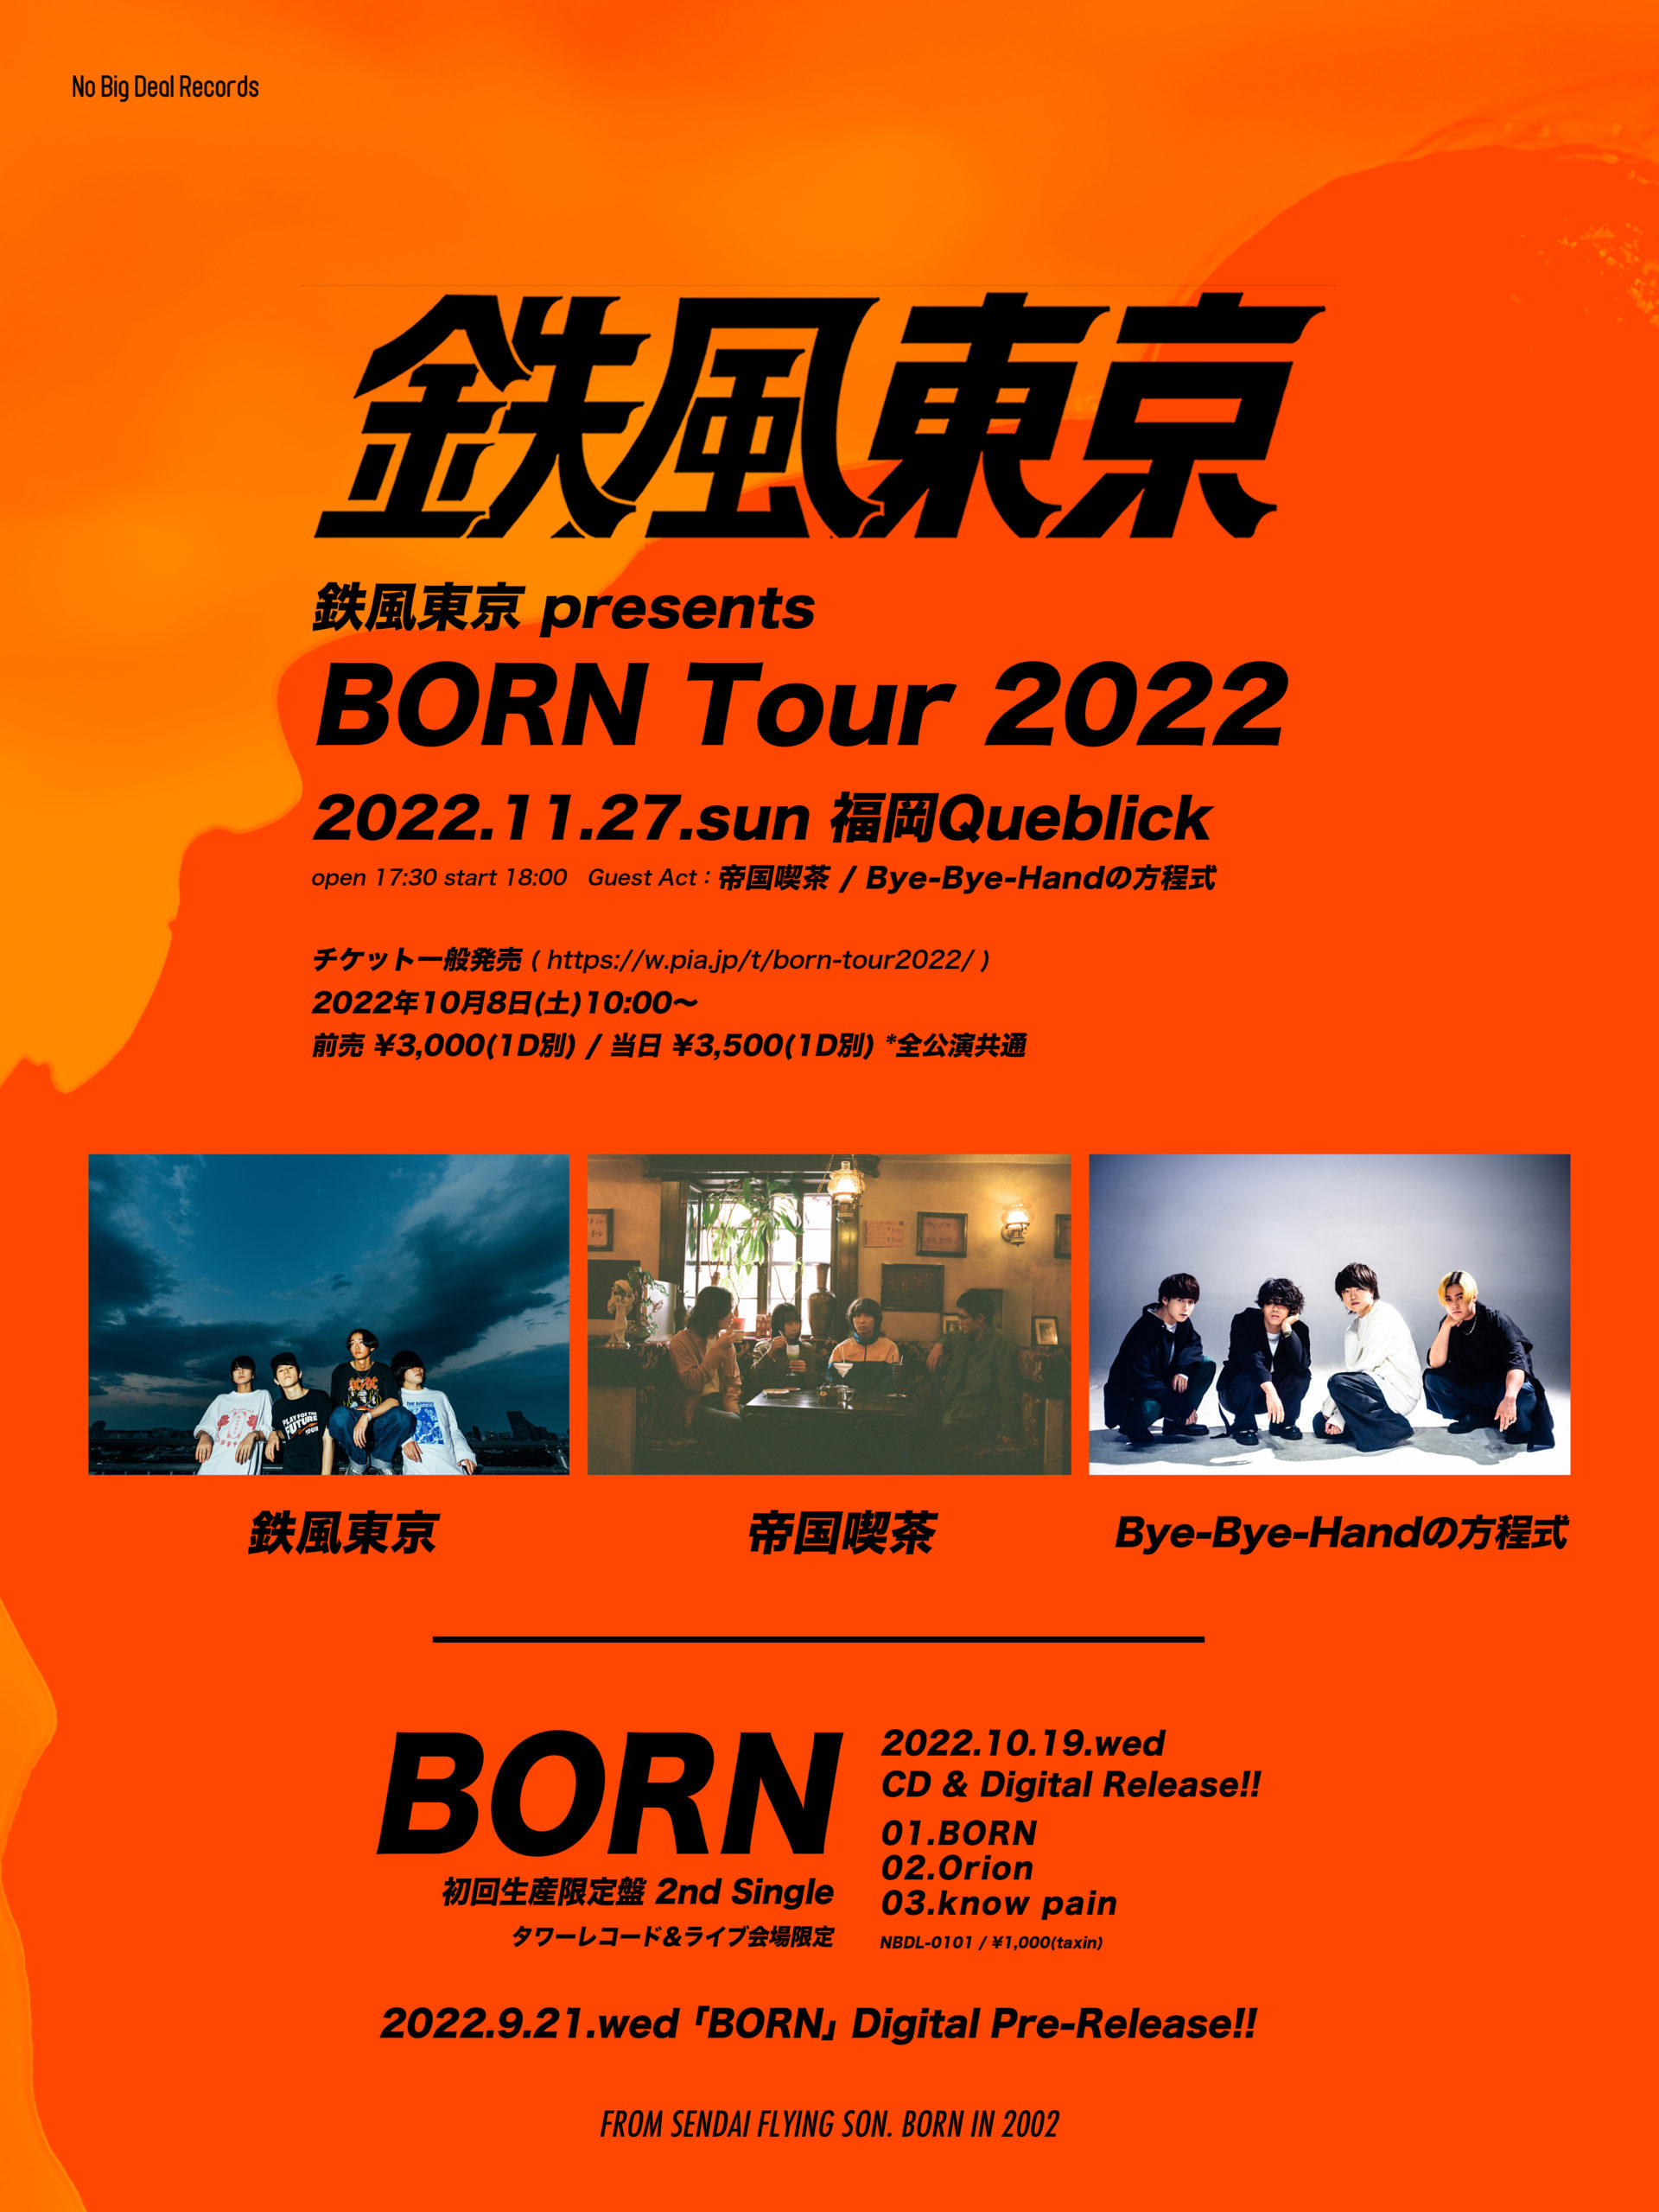 鉄風東京 presents BORN Tour 2022